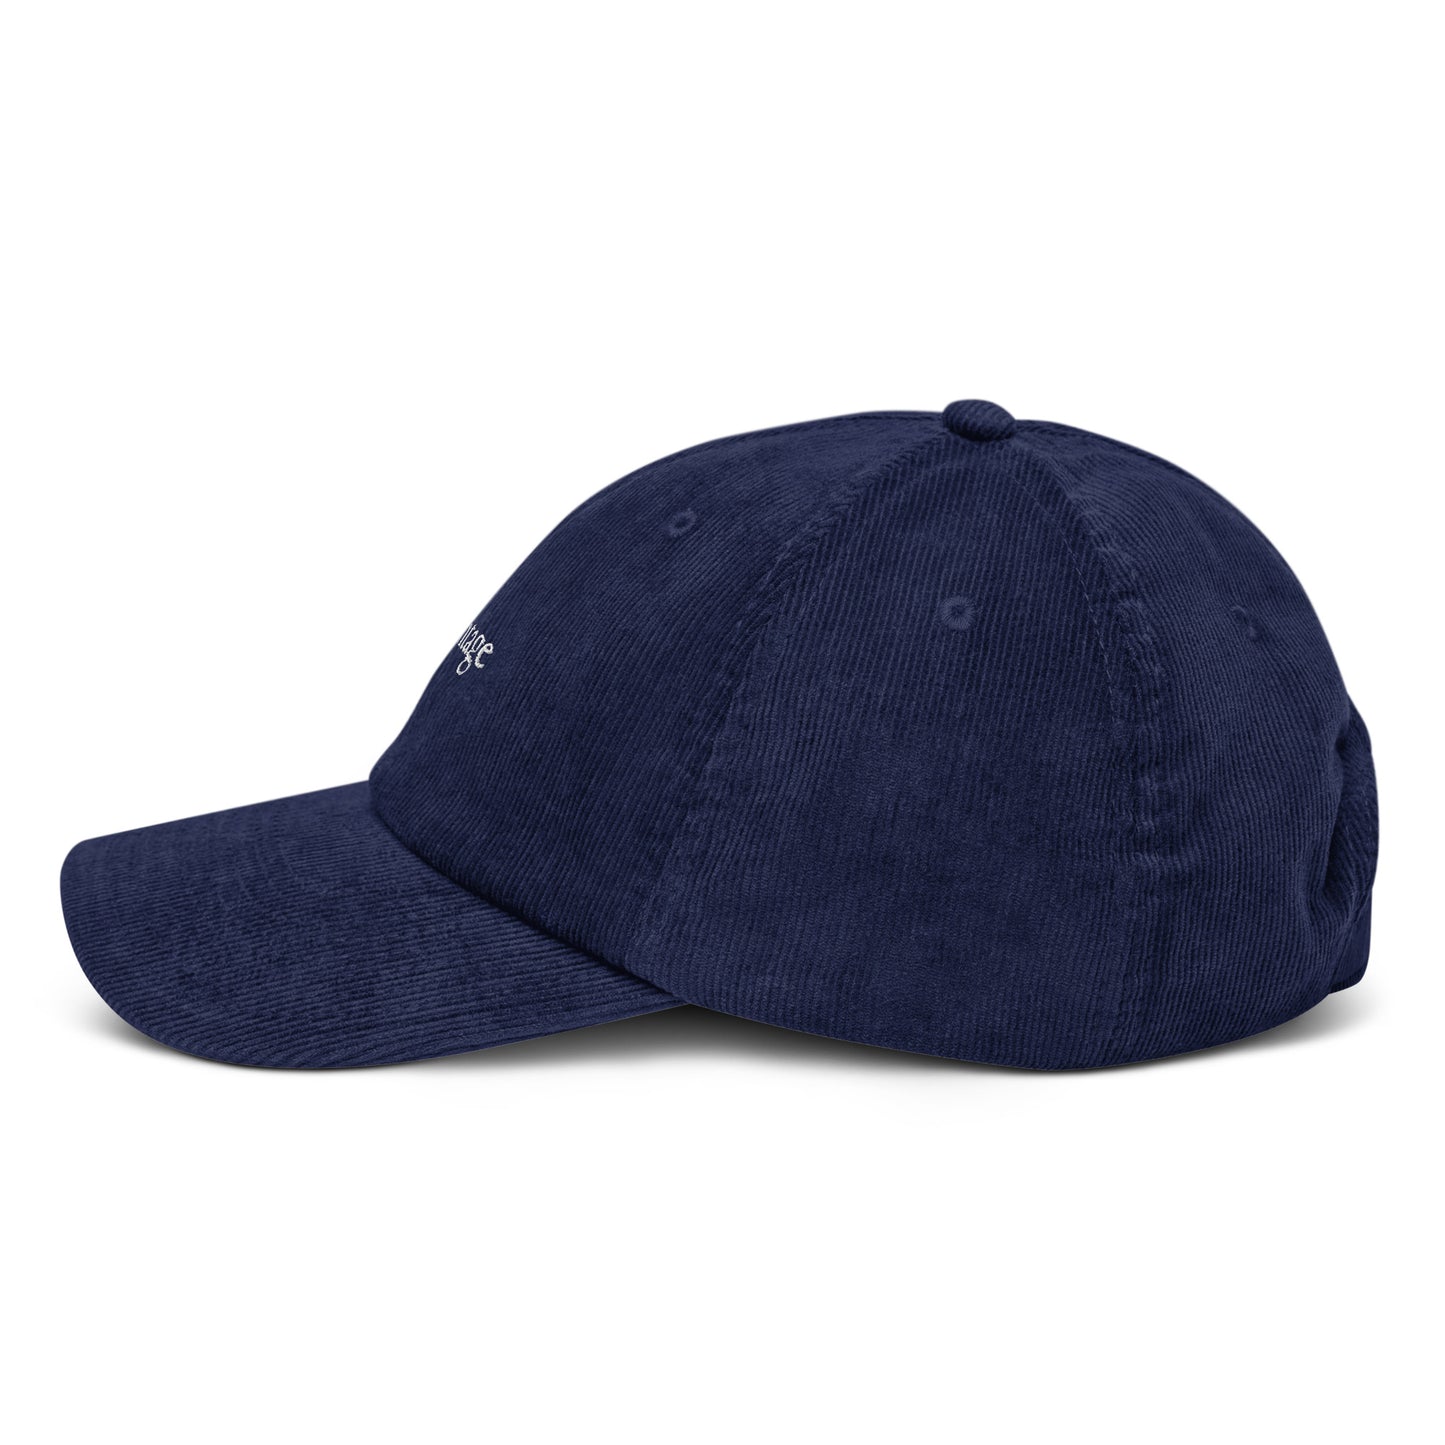 neo-vintage Corduroy hat